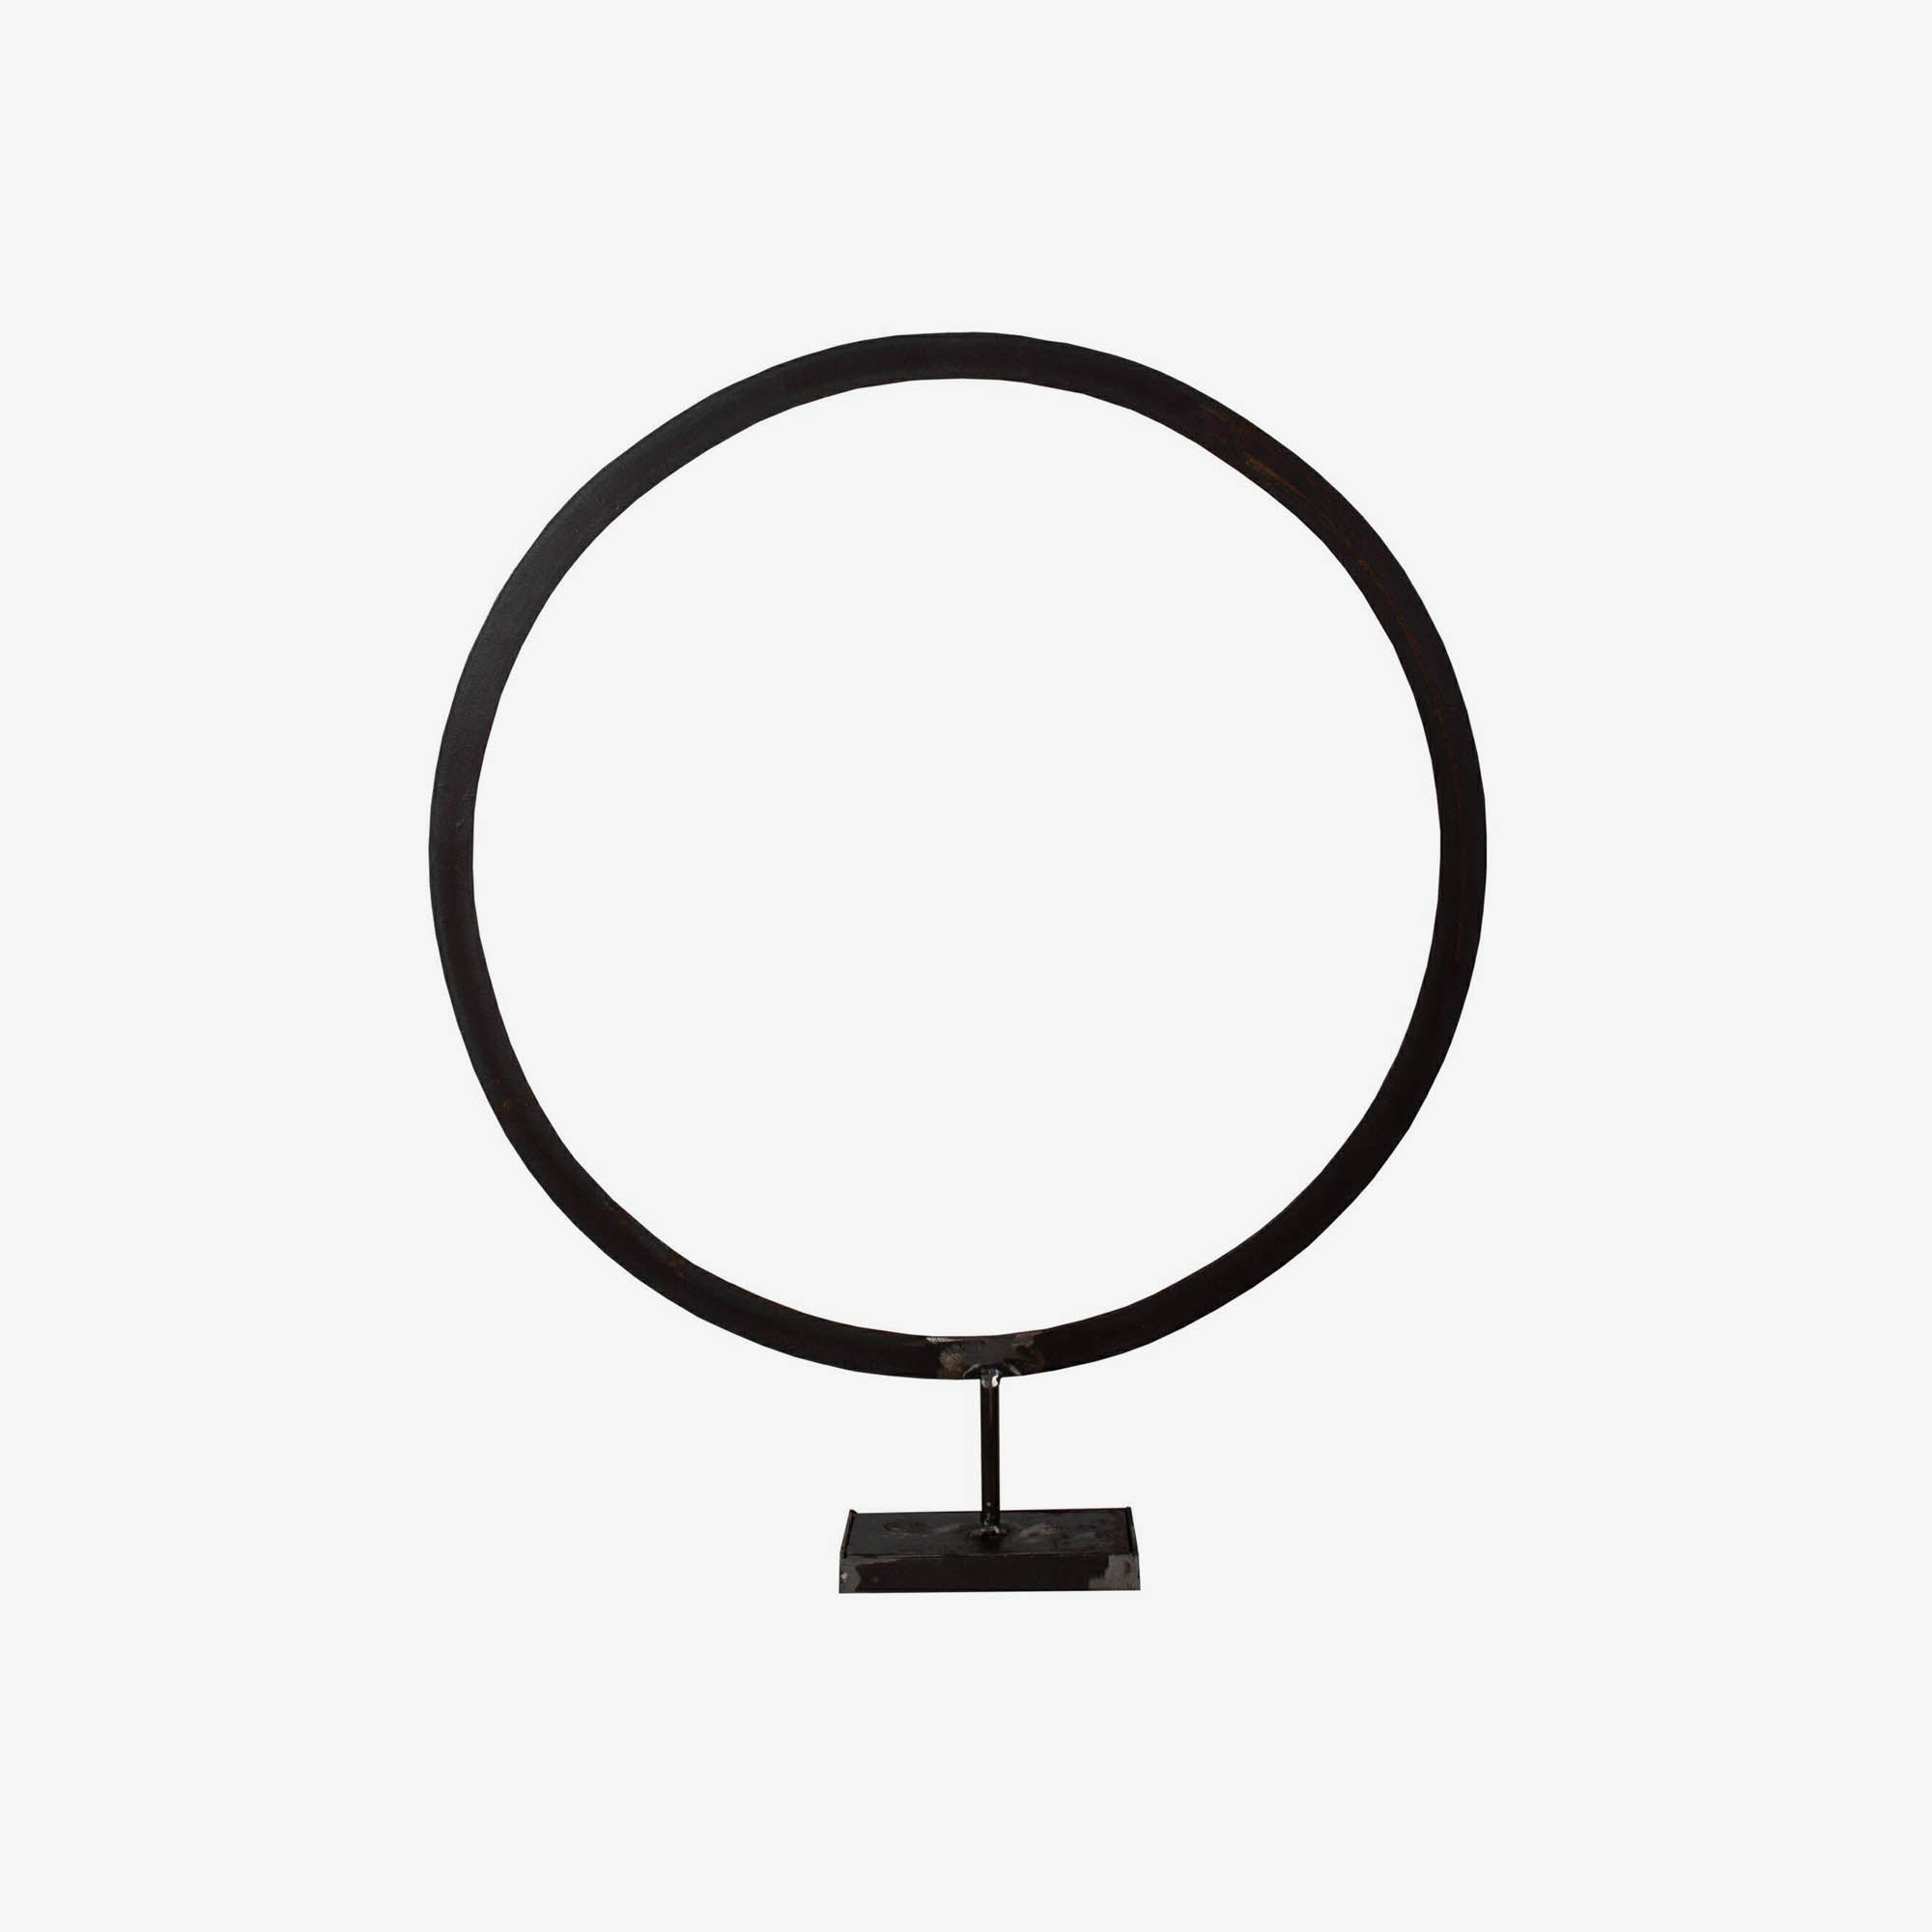 Circle – large